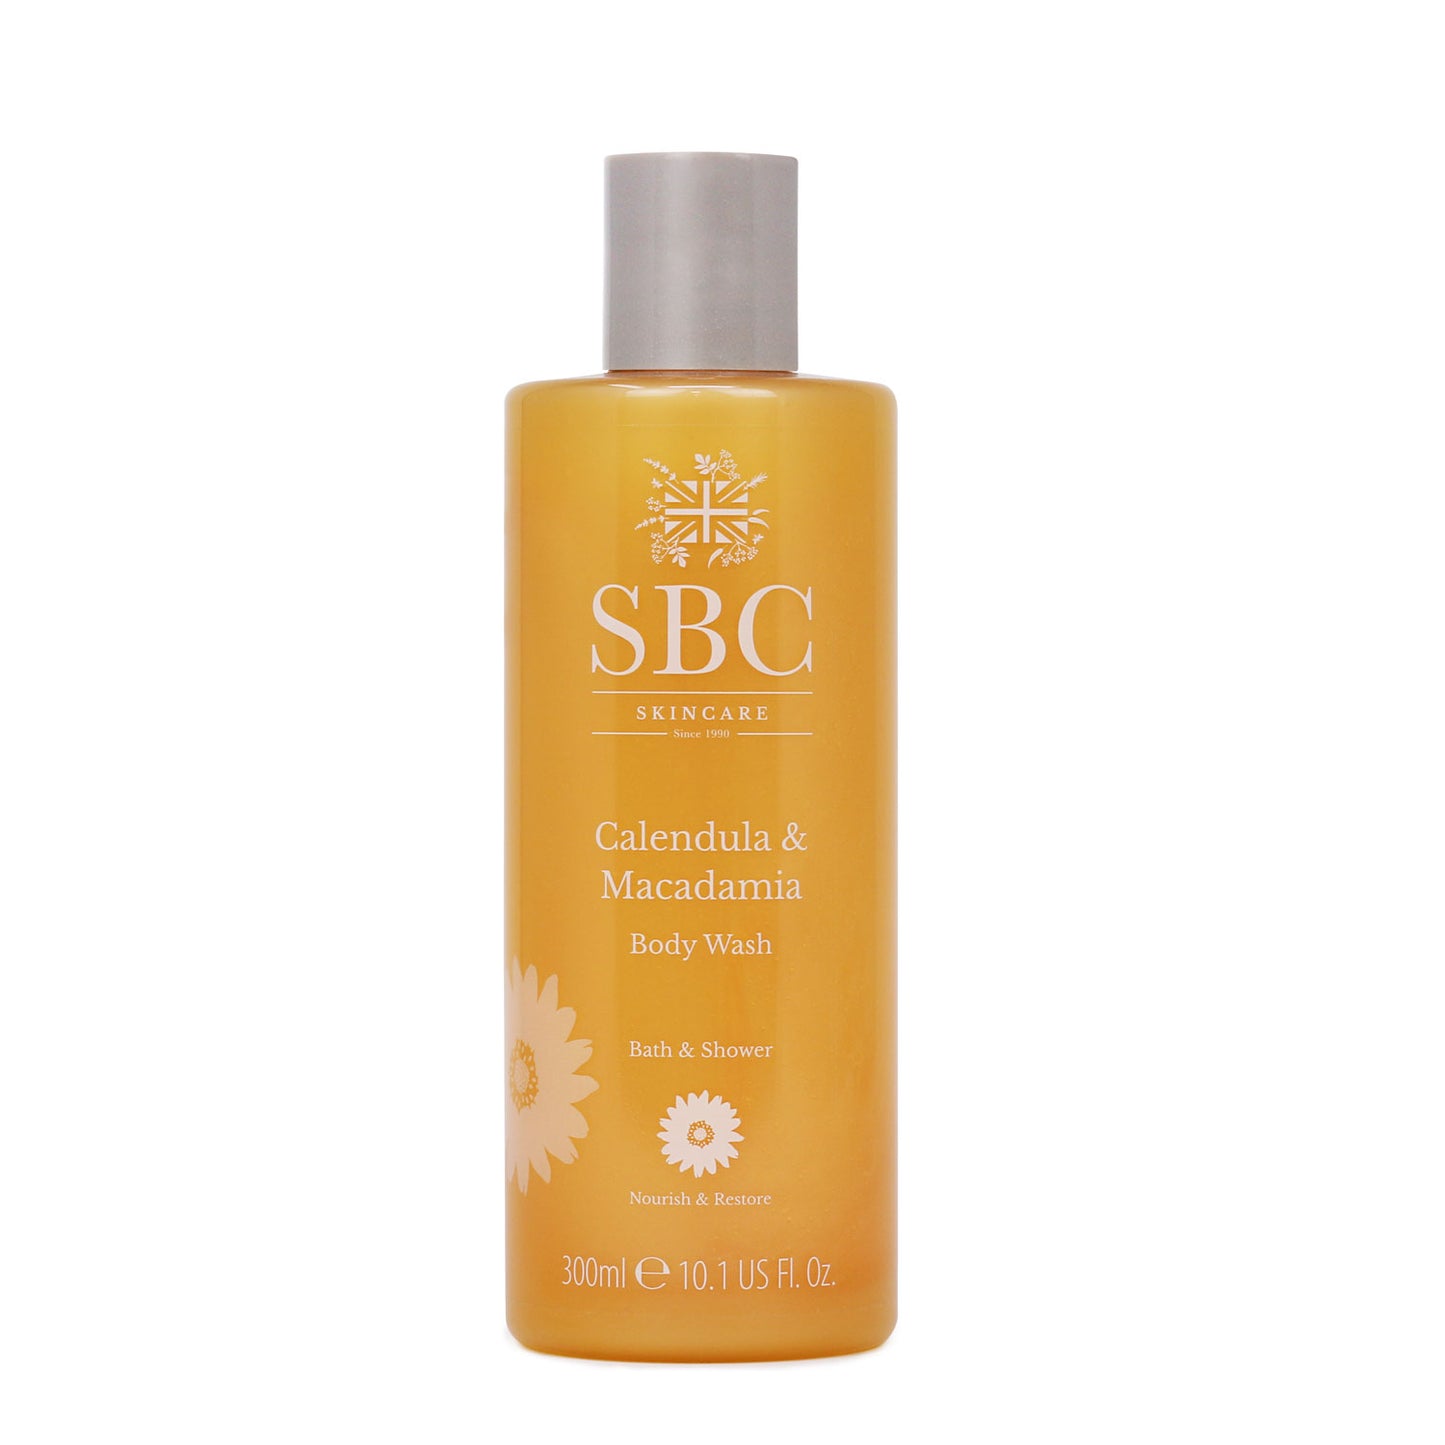 300ml SBC Skincare Calendula & Macadamia Body Wash